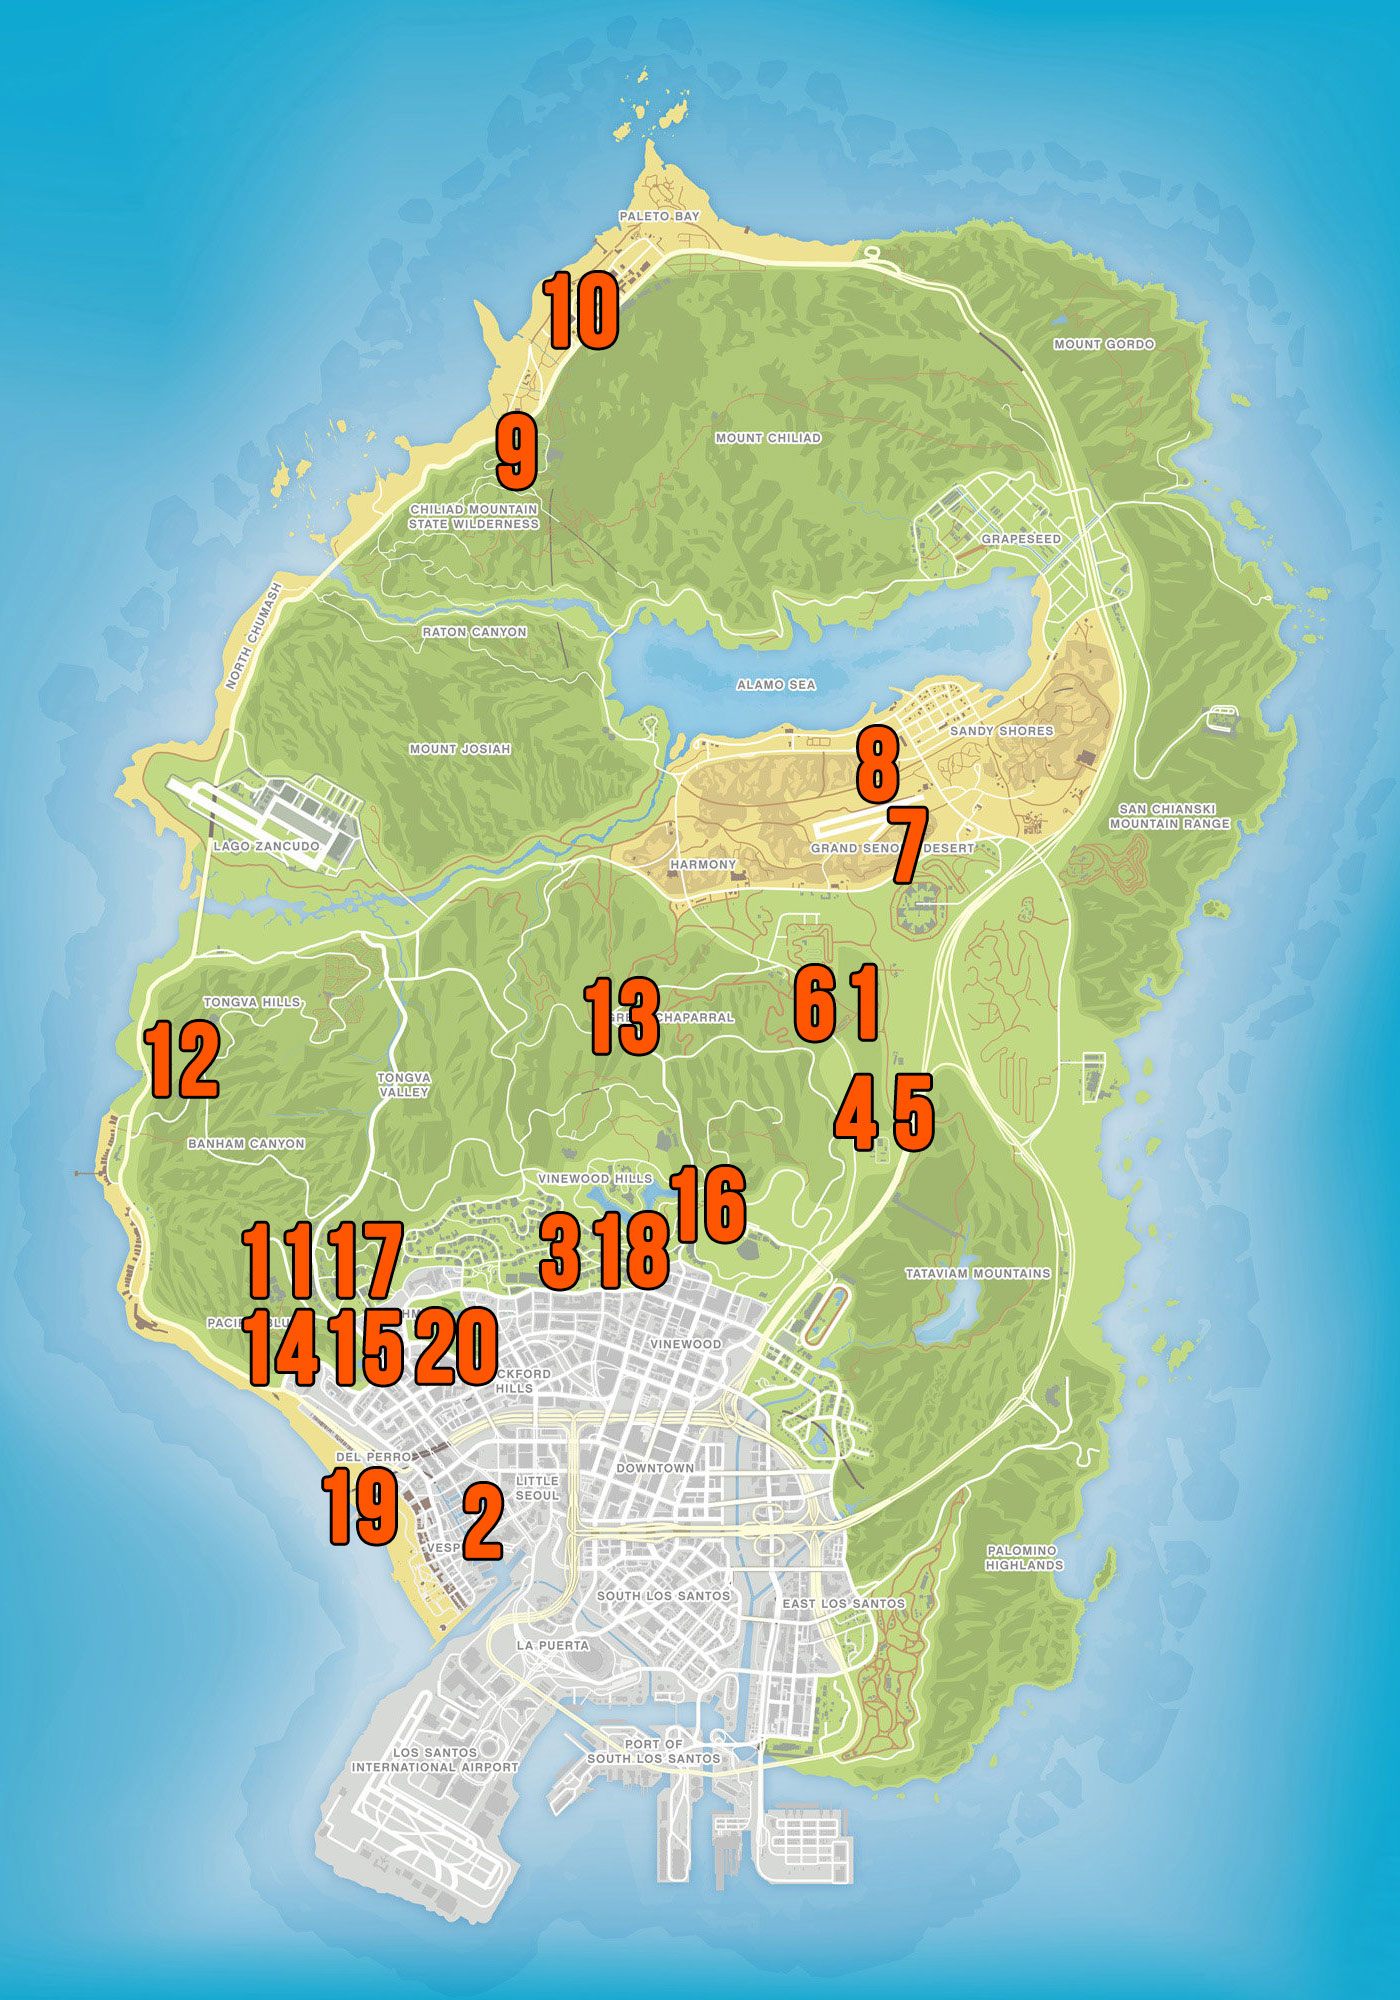 Mapa umístění zvířat v GTA Online